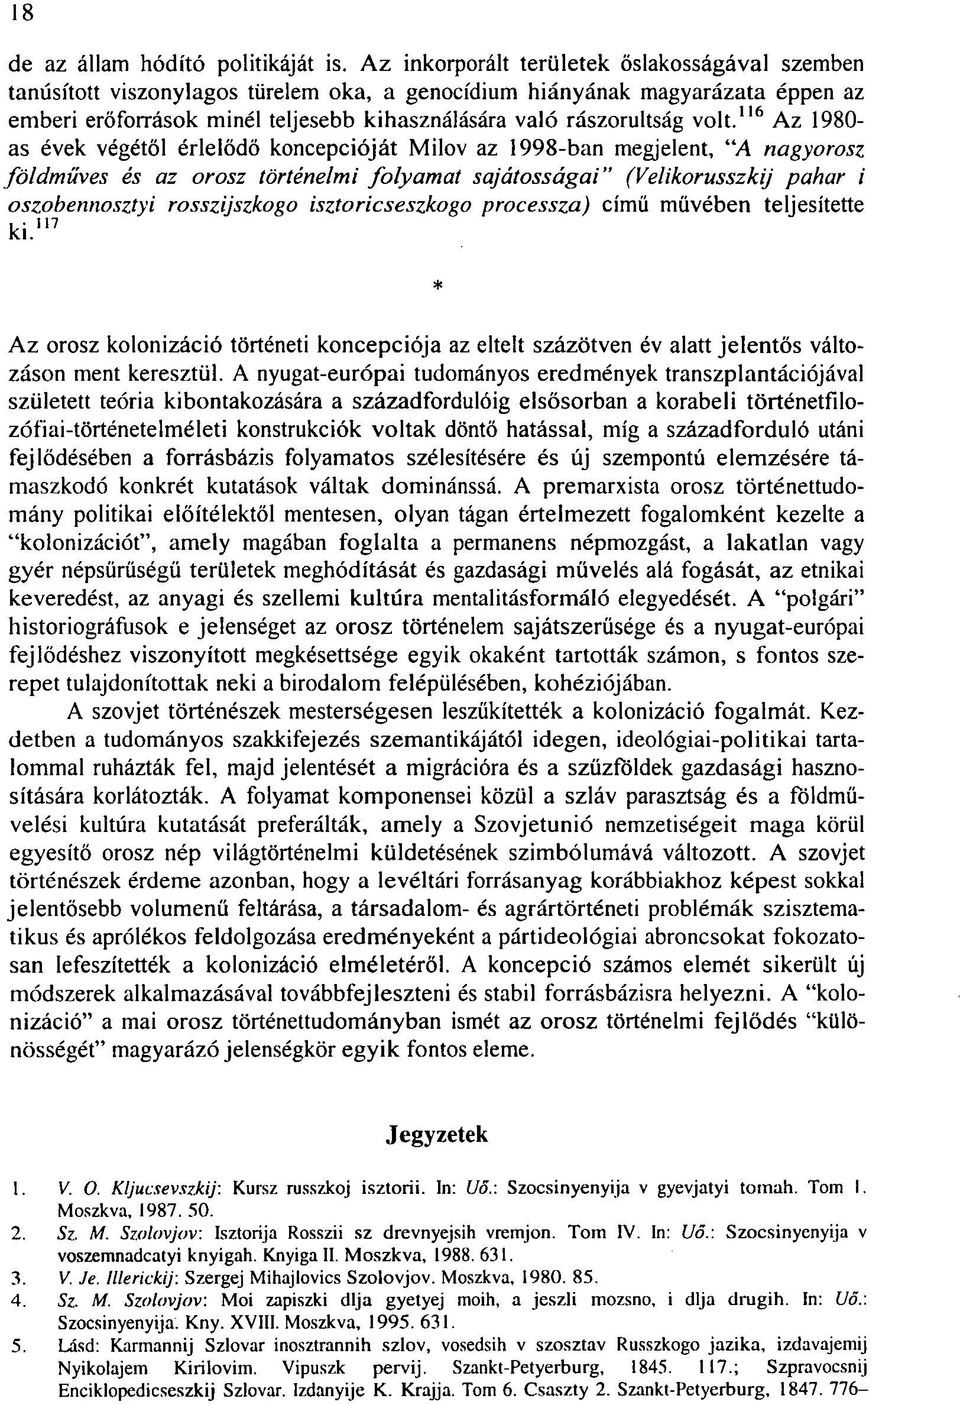 volt. 1 "' Az 1980- as évek végétől érlelődő koncepcióját Milov az 1998-ban megjelent, "A nagyorosz földműves és az orosz történelmi folyamat sajátosságai" (Velikorusszkij pahar i oszobennosztyi